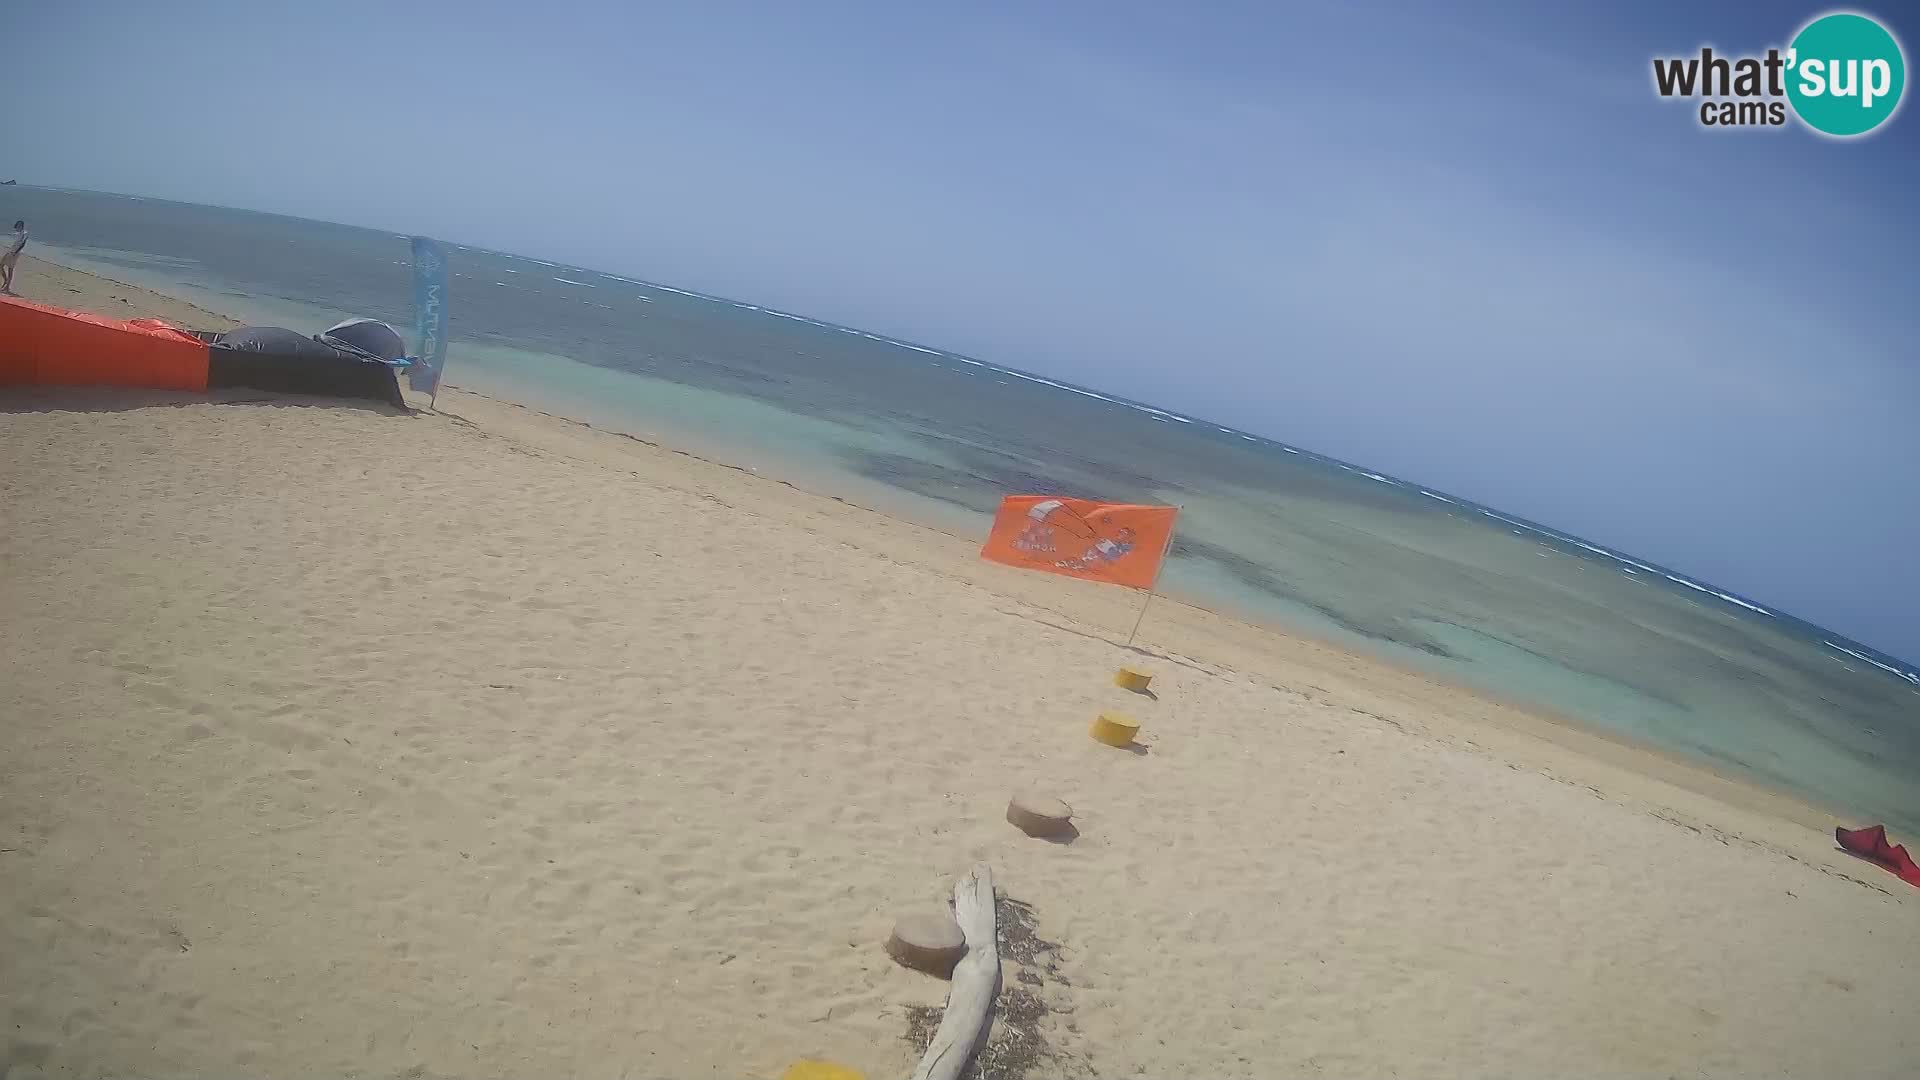 Caméra en direct de Kite Buen Hombre Kiteboarding – Plage Buen Hombre – Monte Cristi – République Dominicaine